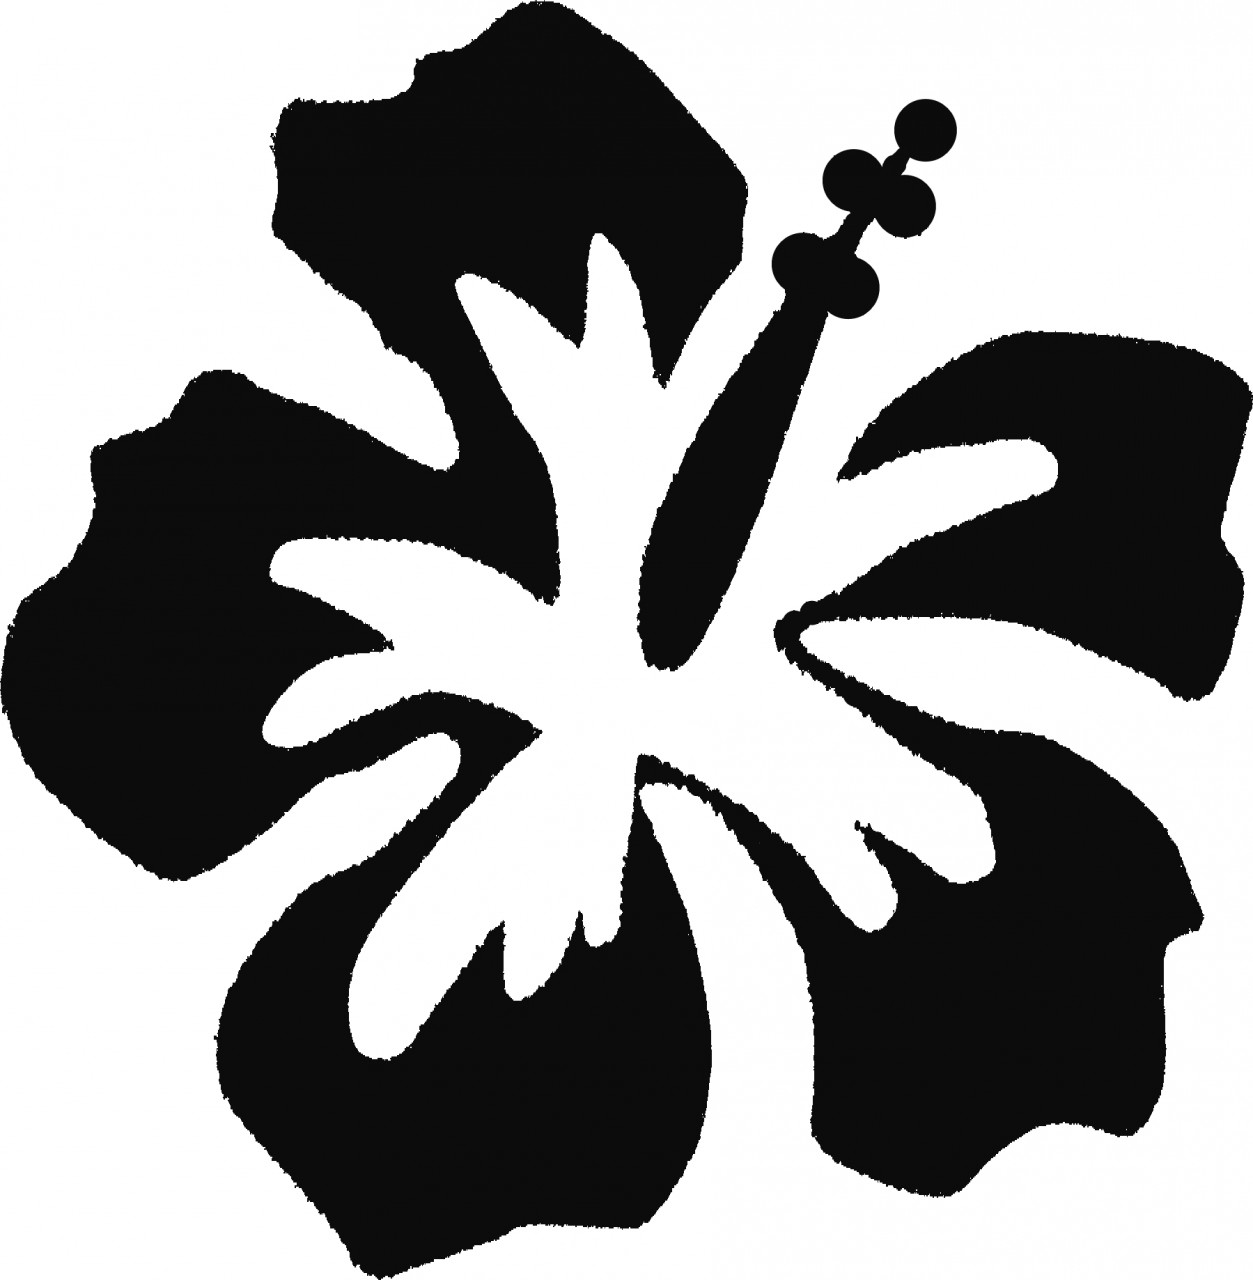 Hawaiian Flower Clip Art - ClipArt Best